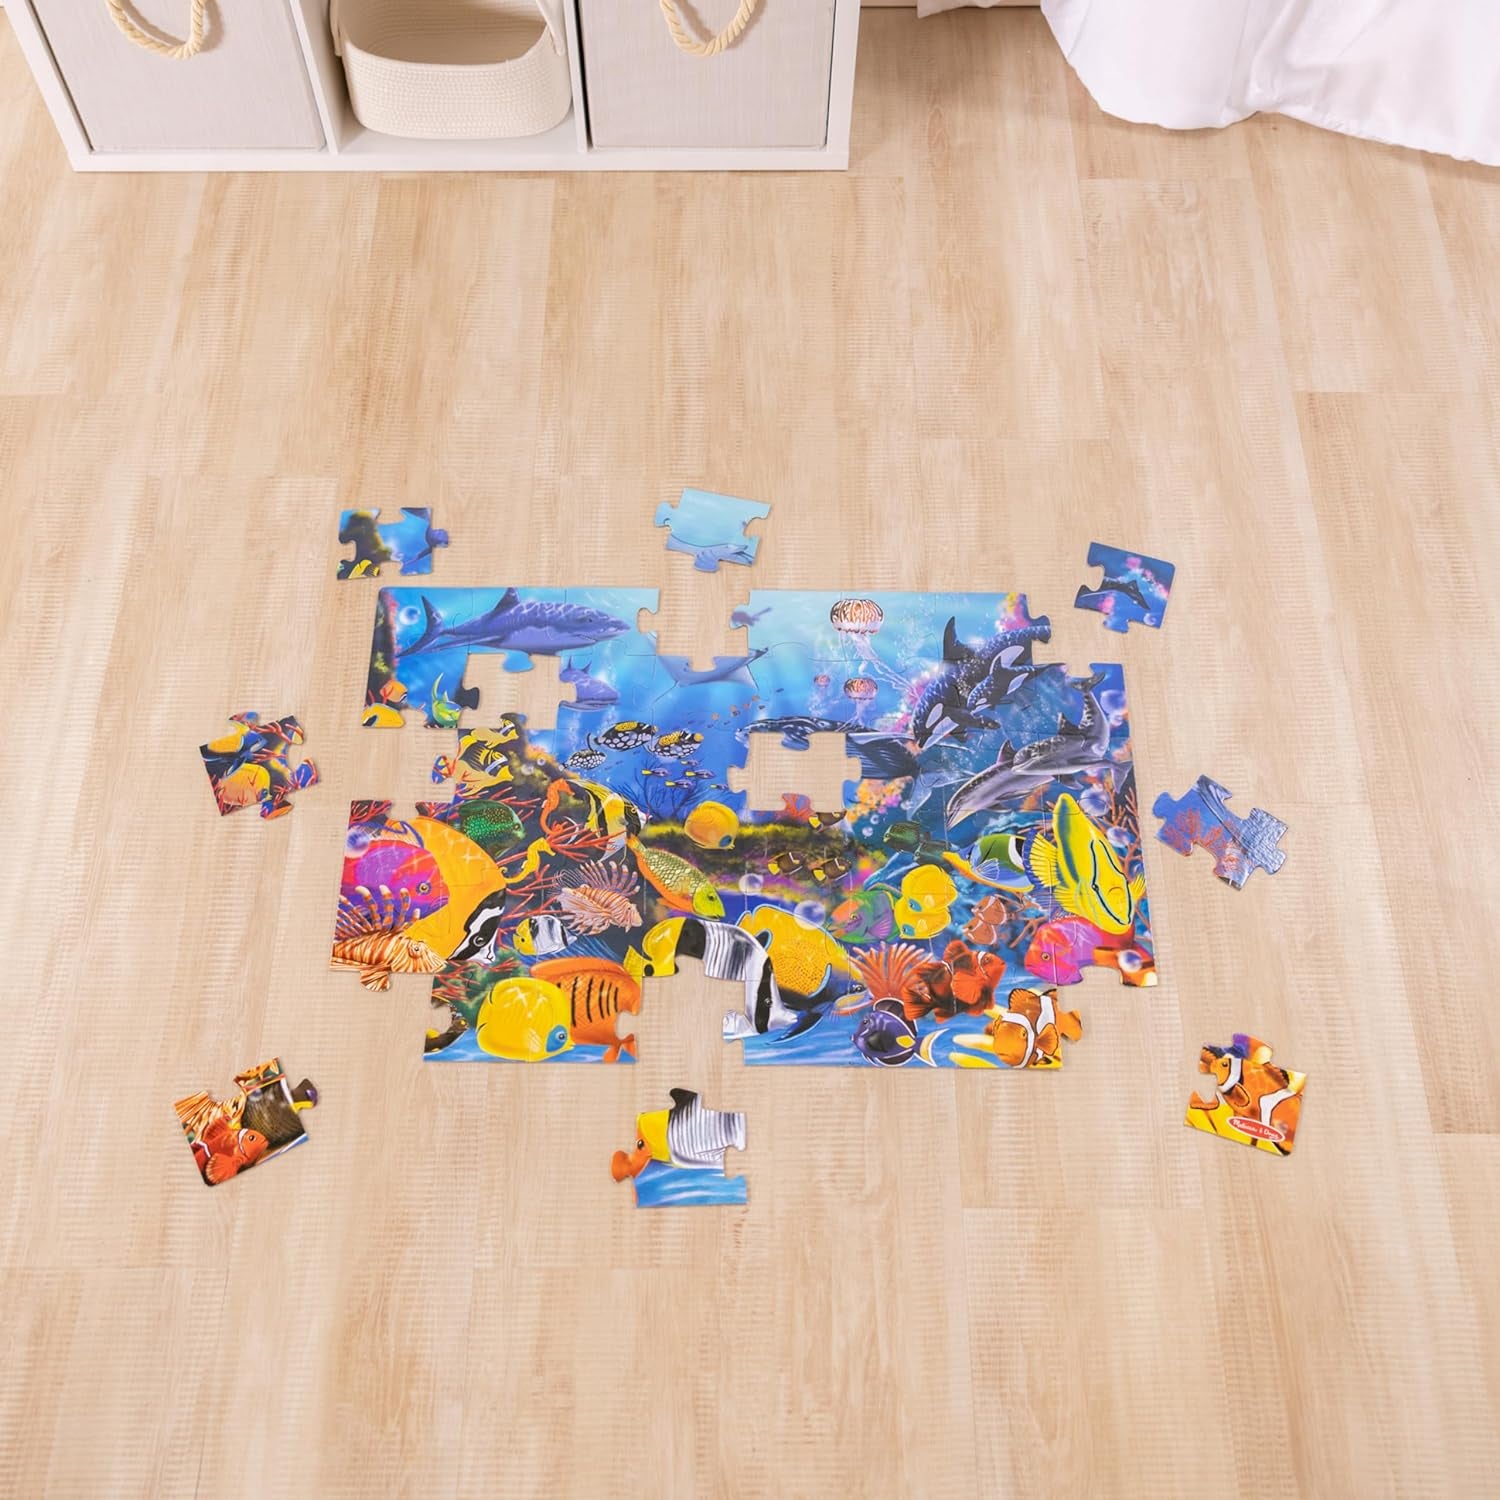 Melissa & Doug Underwater Ocean Floor Puzzle (48 Pcs, 2 X 3 Feet) Toddler Floor Puzzle, Ocean Animals Puzzle for Kids 3+ - Fsc-Certified Materials